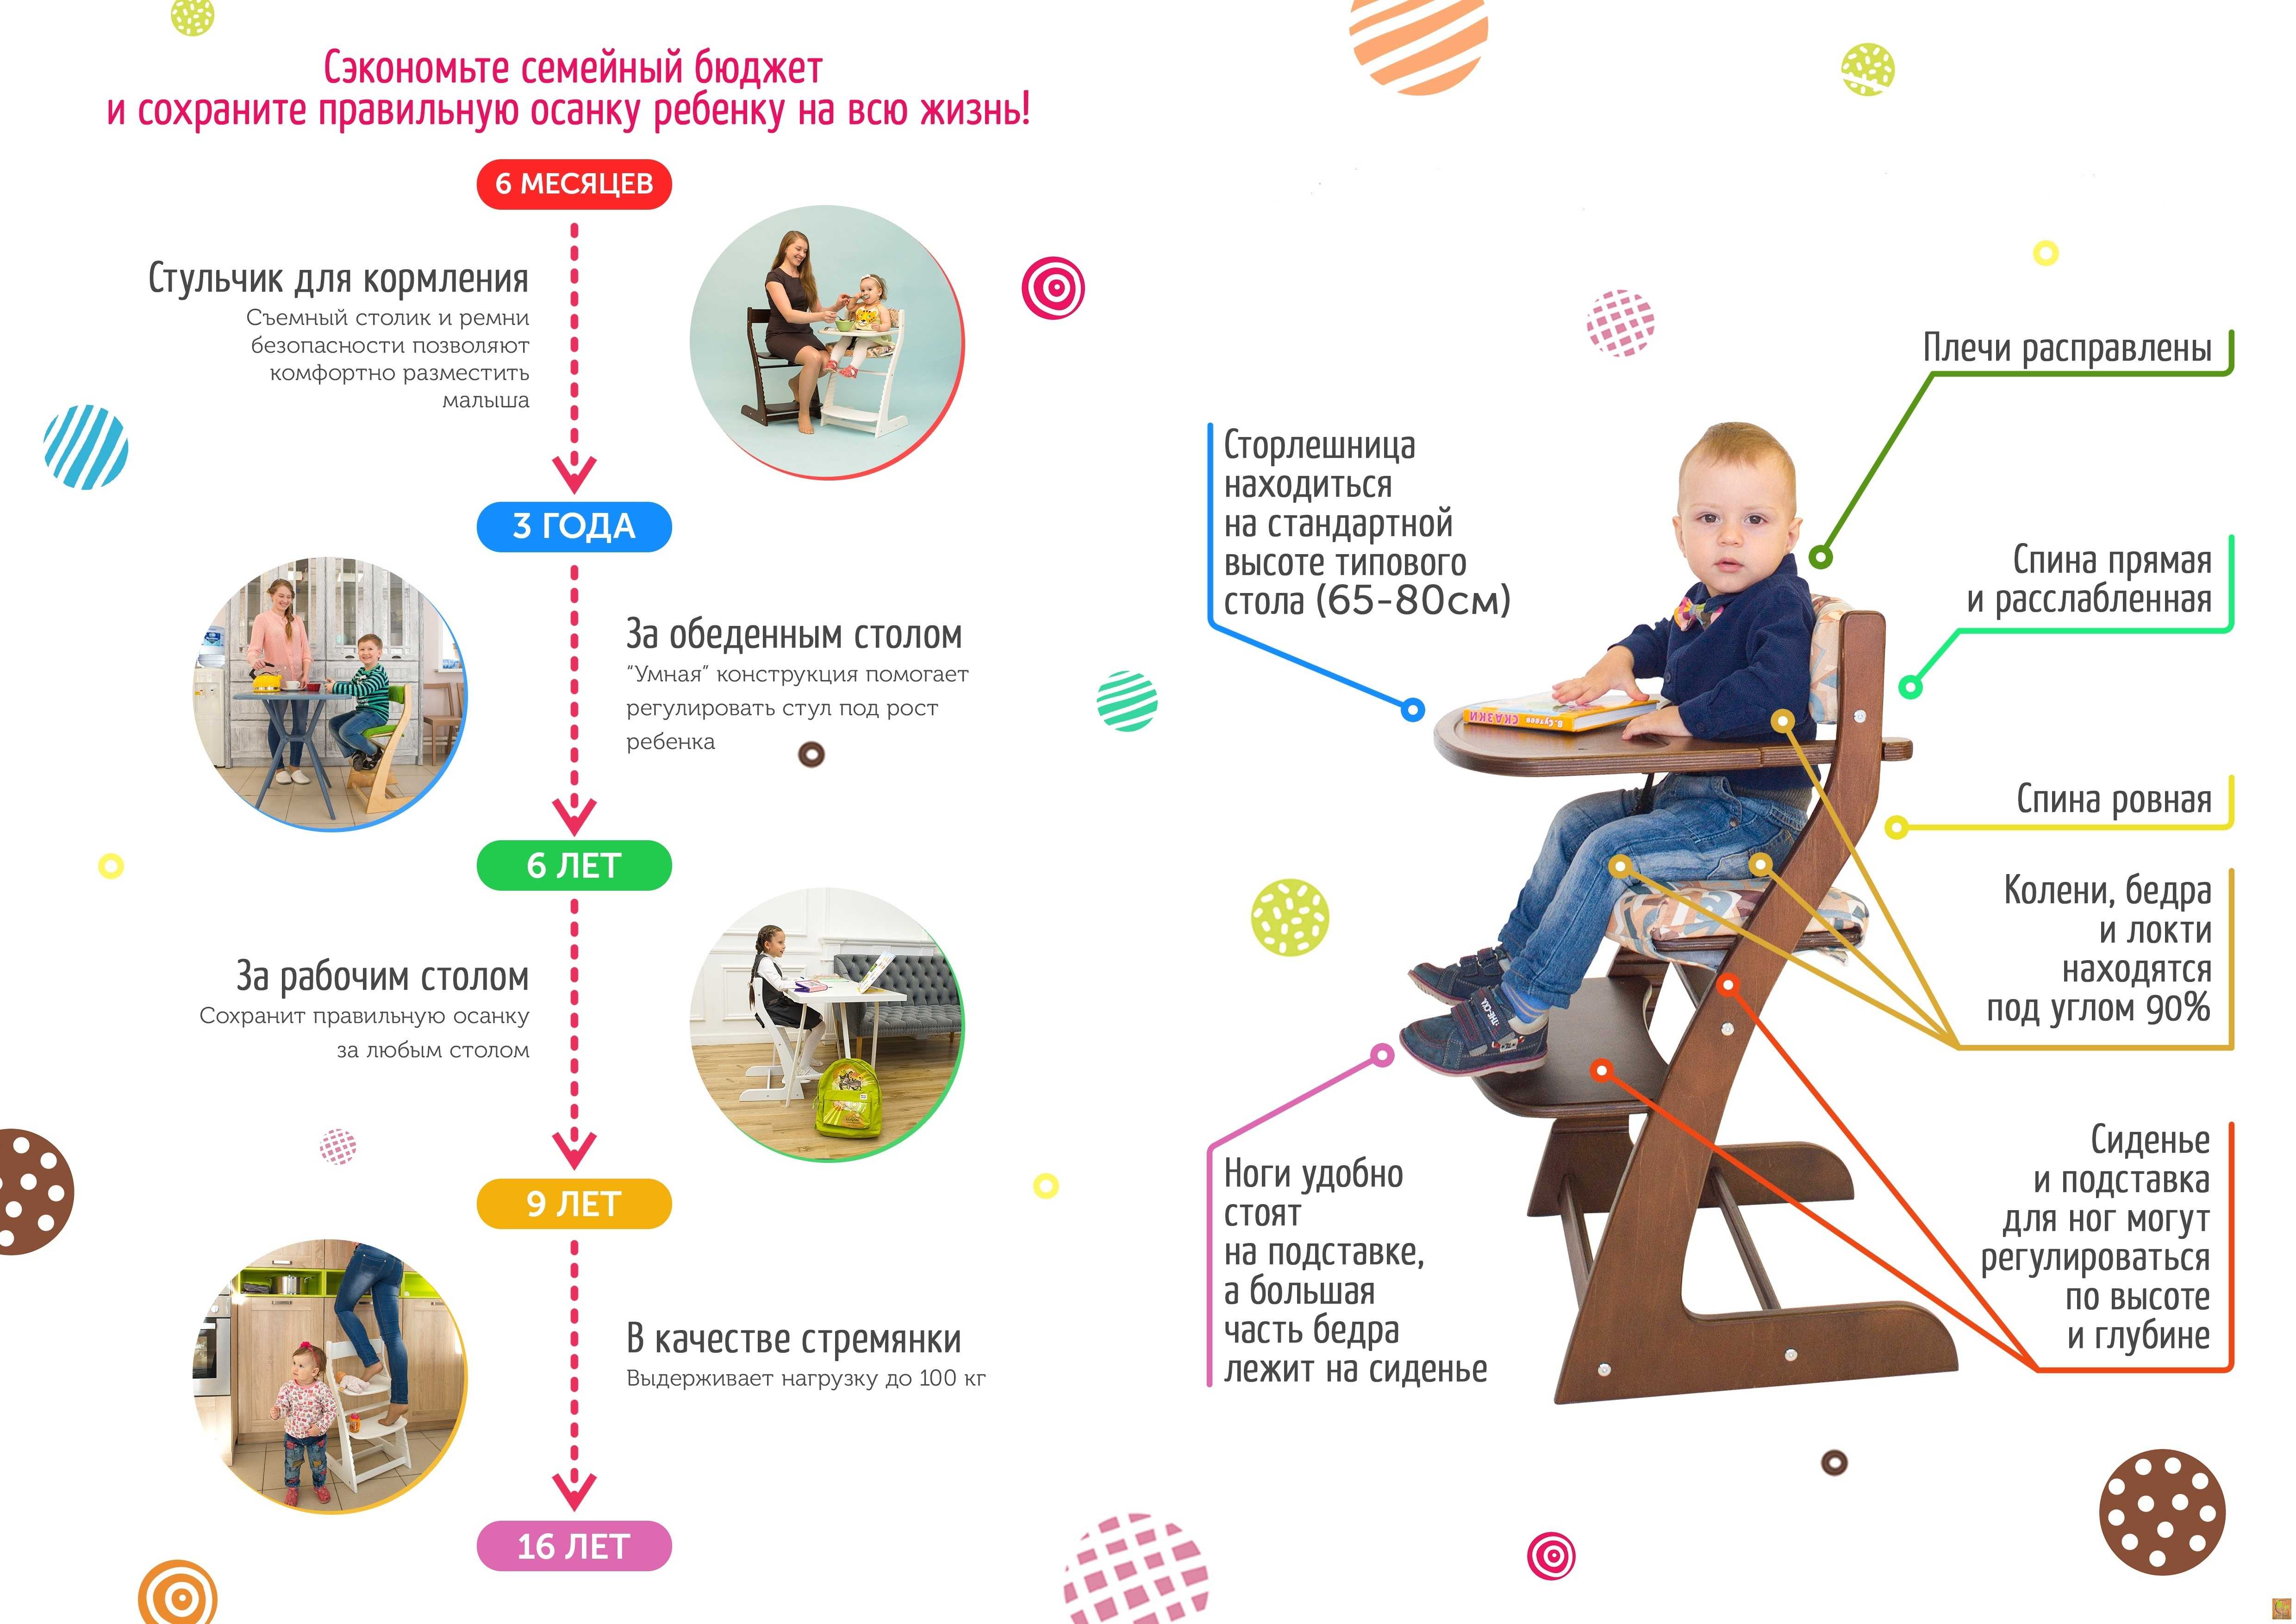 Стул «вырастайка» (31 фото) — выбираем растущий детский стульчик по размеру и материалу для первоклассника, отзывы об использовании таких моделей